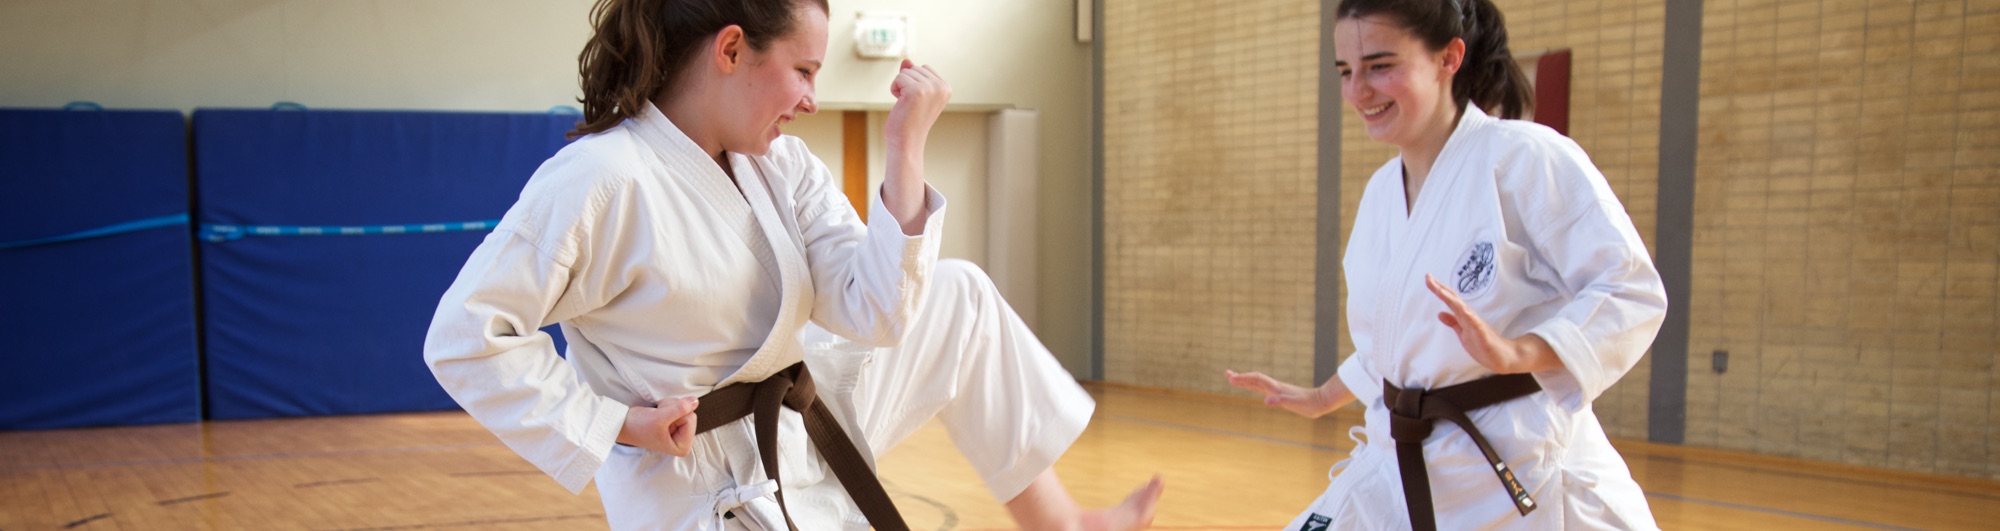 Zwei junge Frauen haben Spaß beim Karate Training